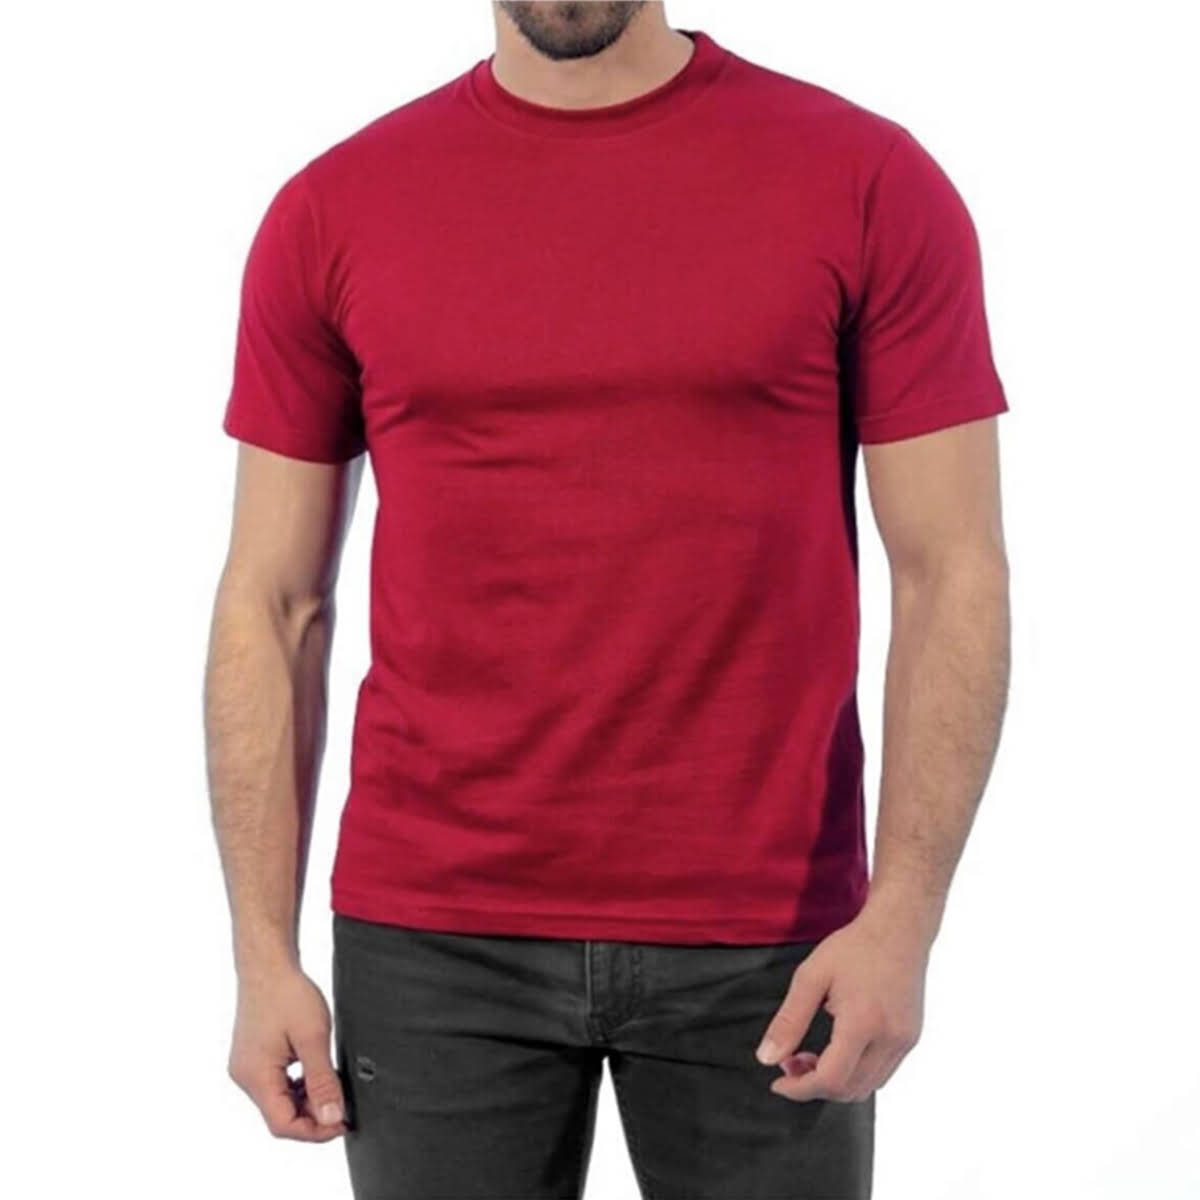 Yuvarlak Yakalı Kısa Kollu Basic baskıya ve nakışa uygun pamuk 1 .kalite geniş kalıp iş güvenliği tişörtü